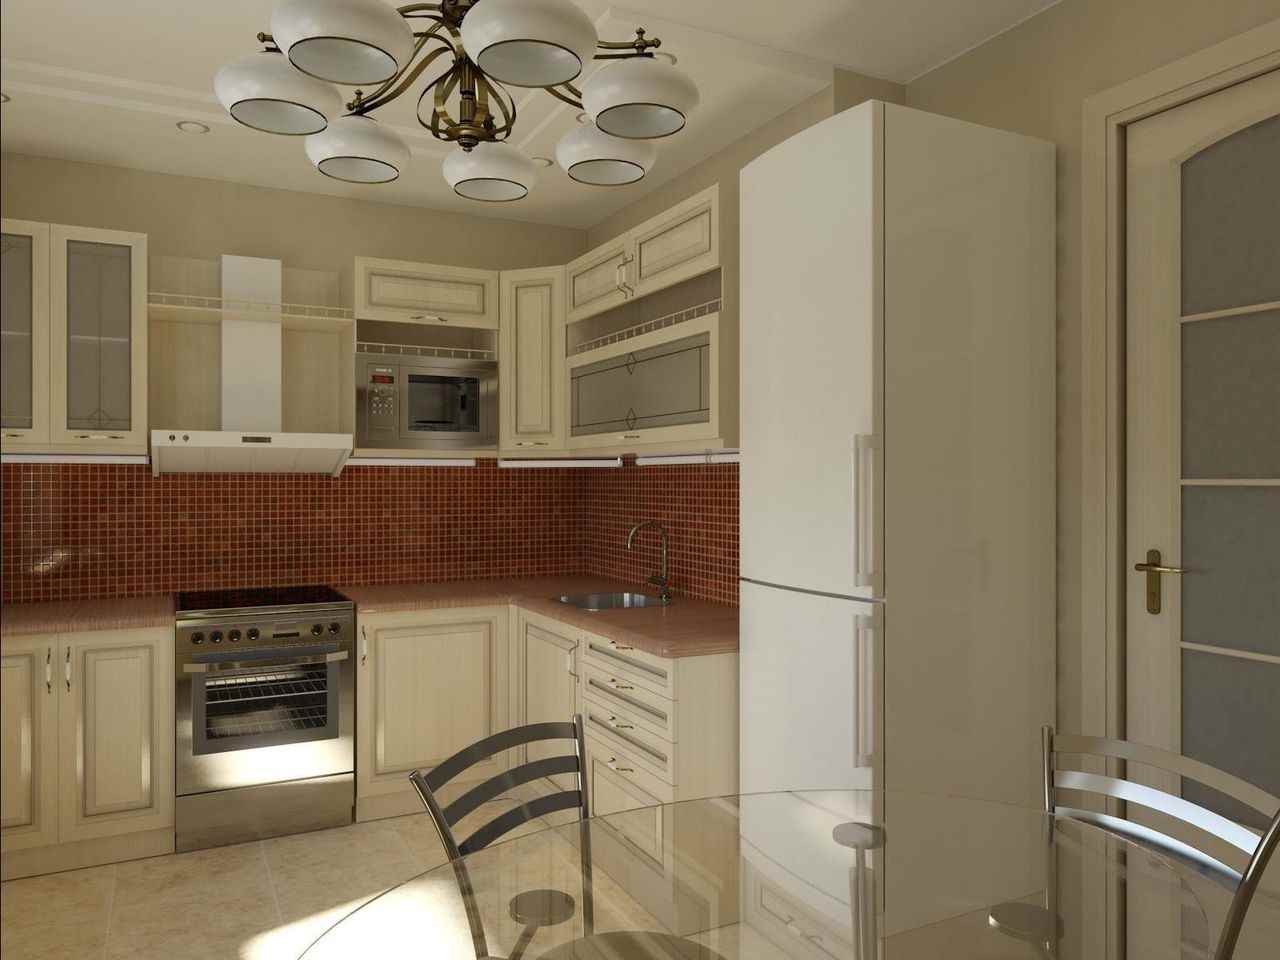 فكرة تصميم المطبخ مشرق من 11 متر مربع